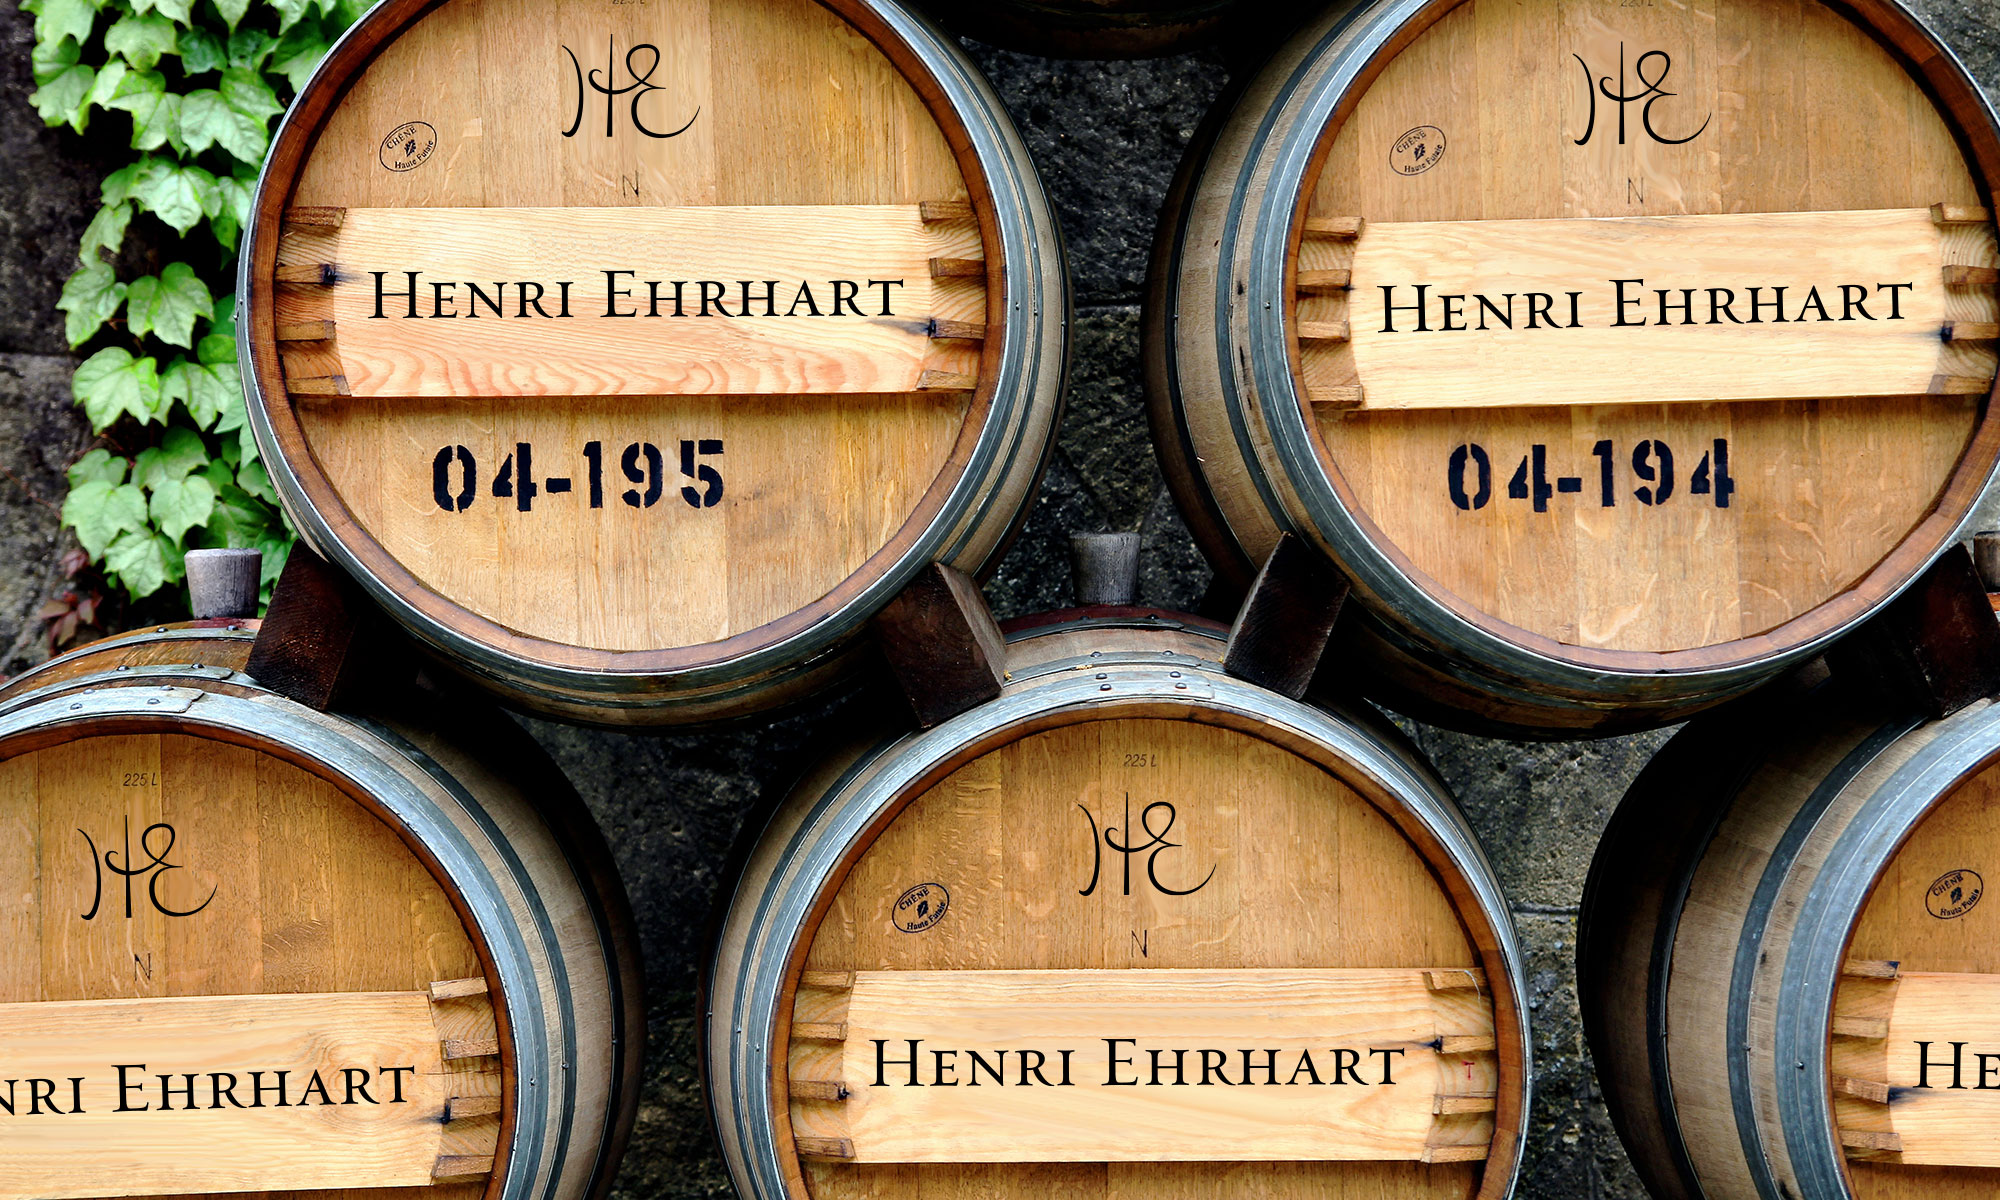 henri-ehrhart-barrels